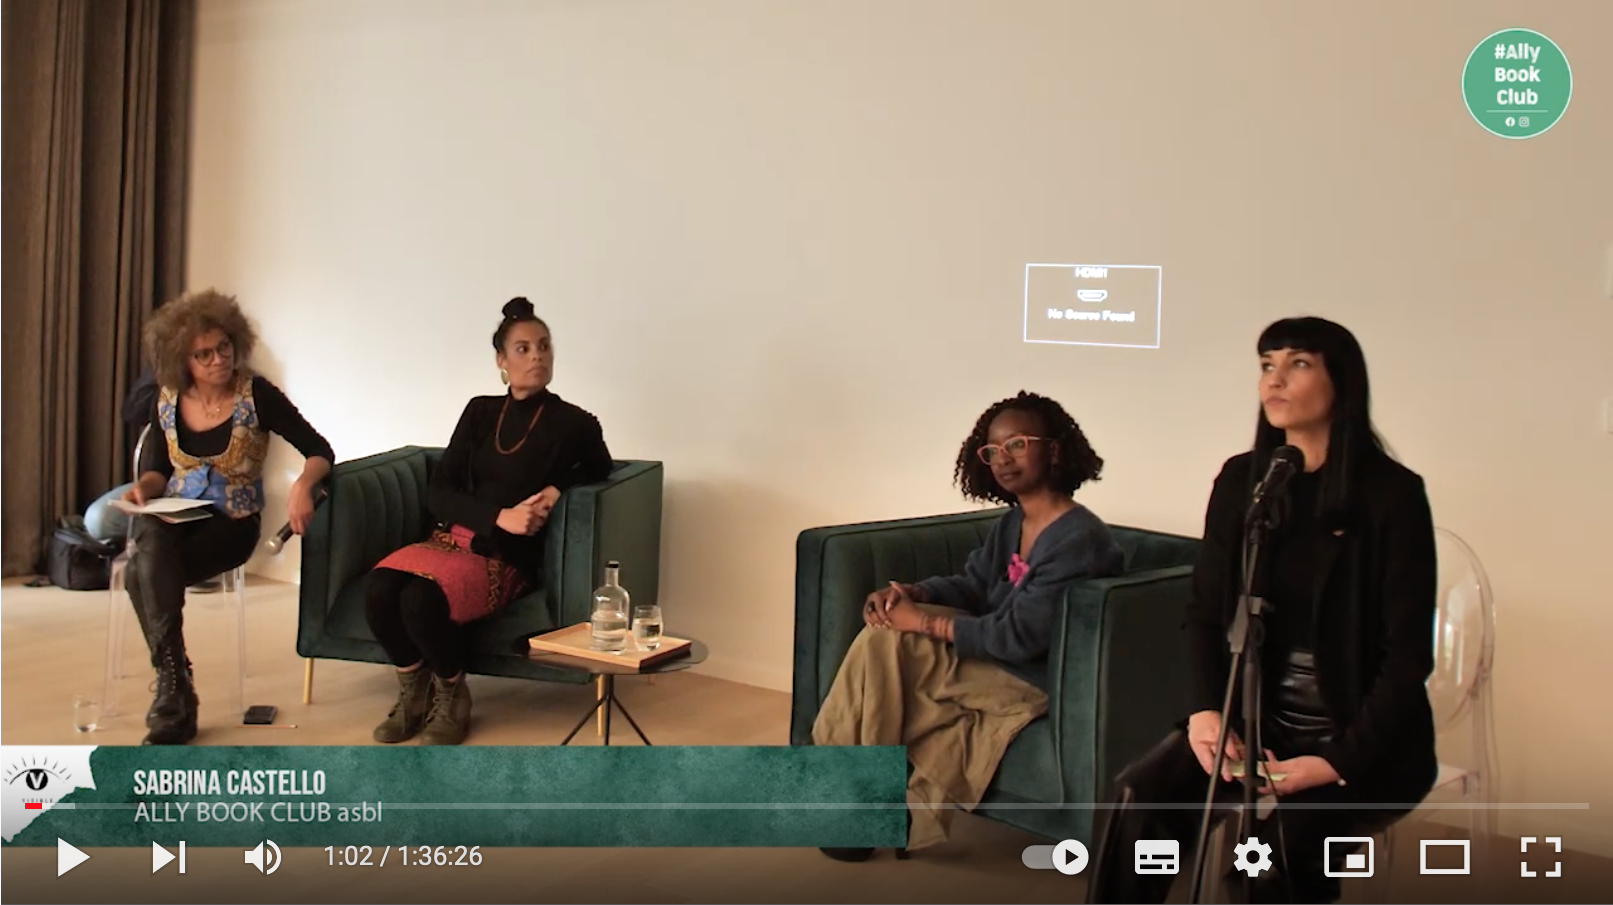 Video Standbild mit vier Frauen bei der Konferenz